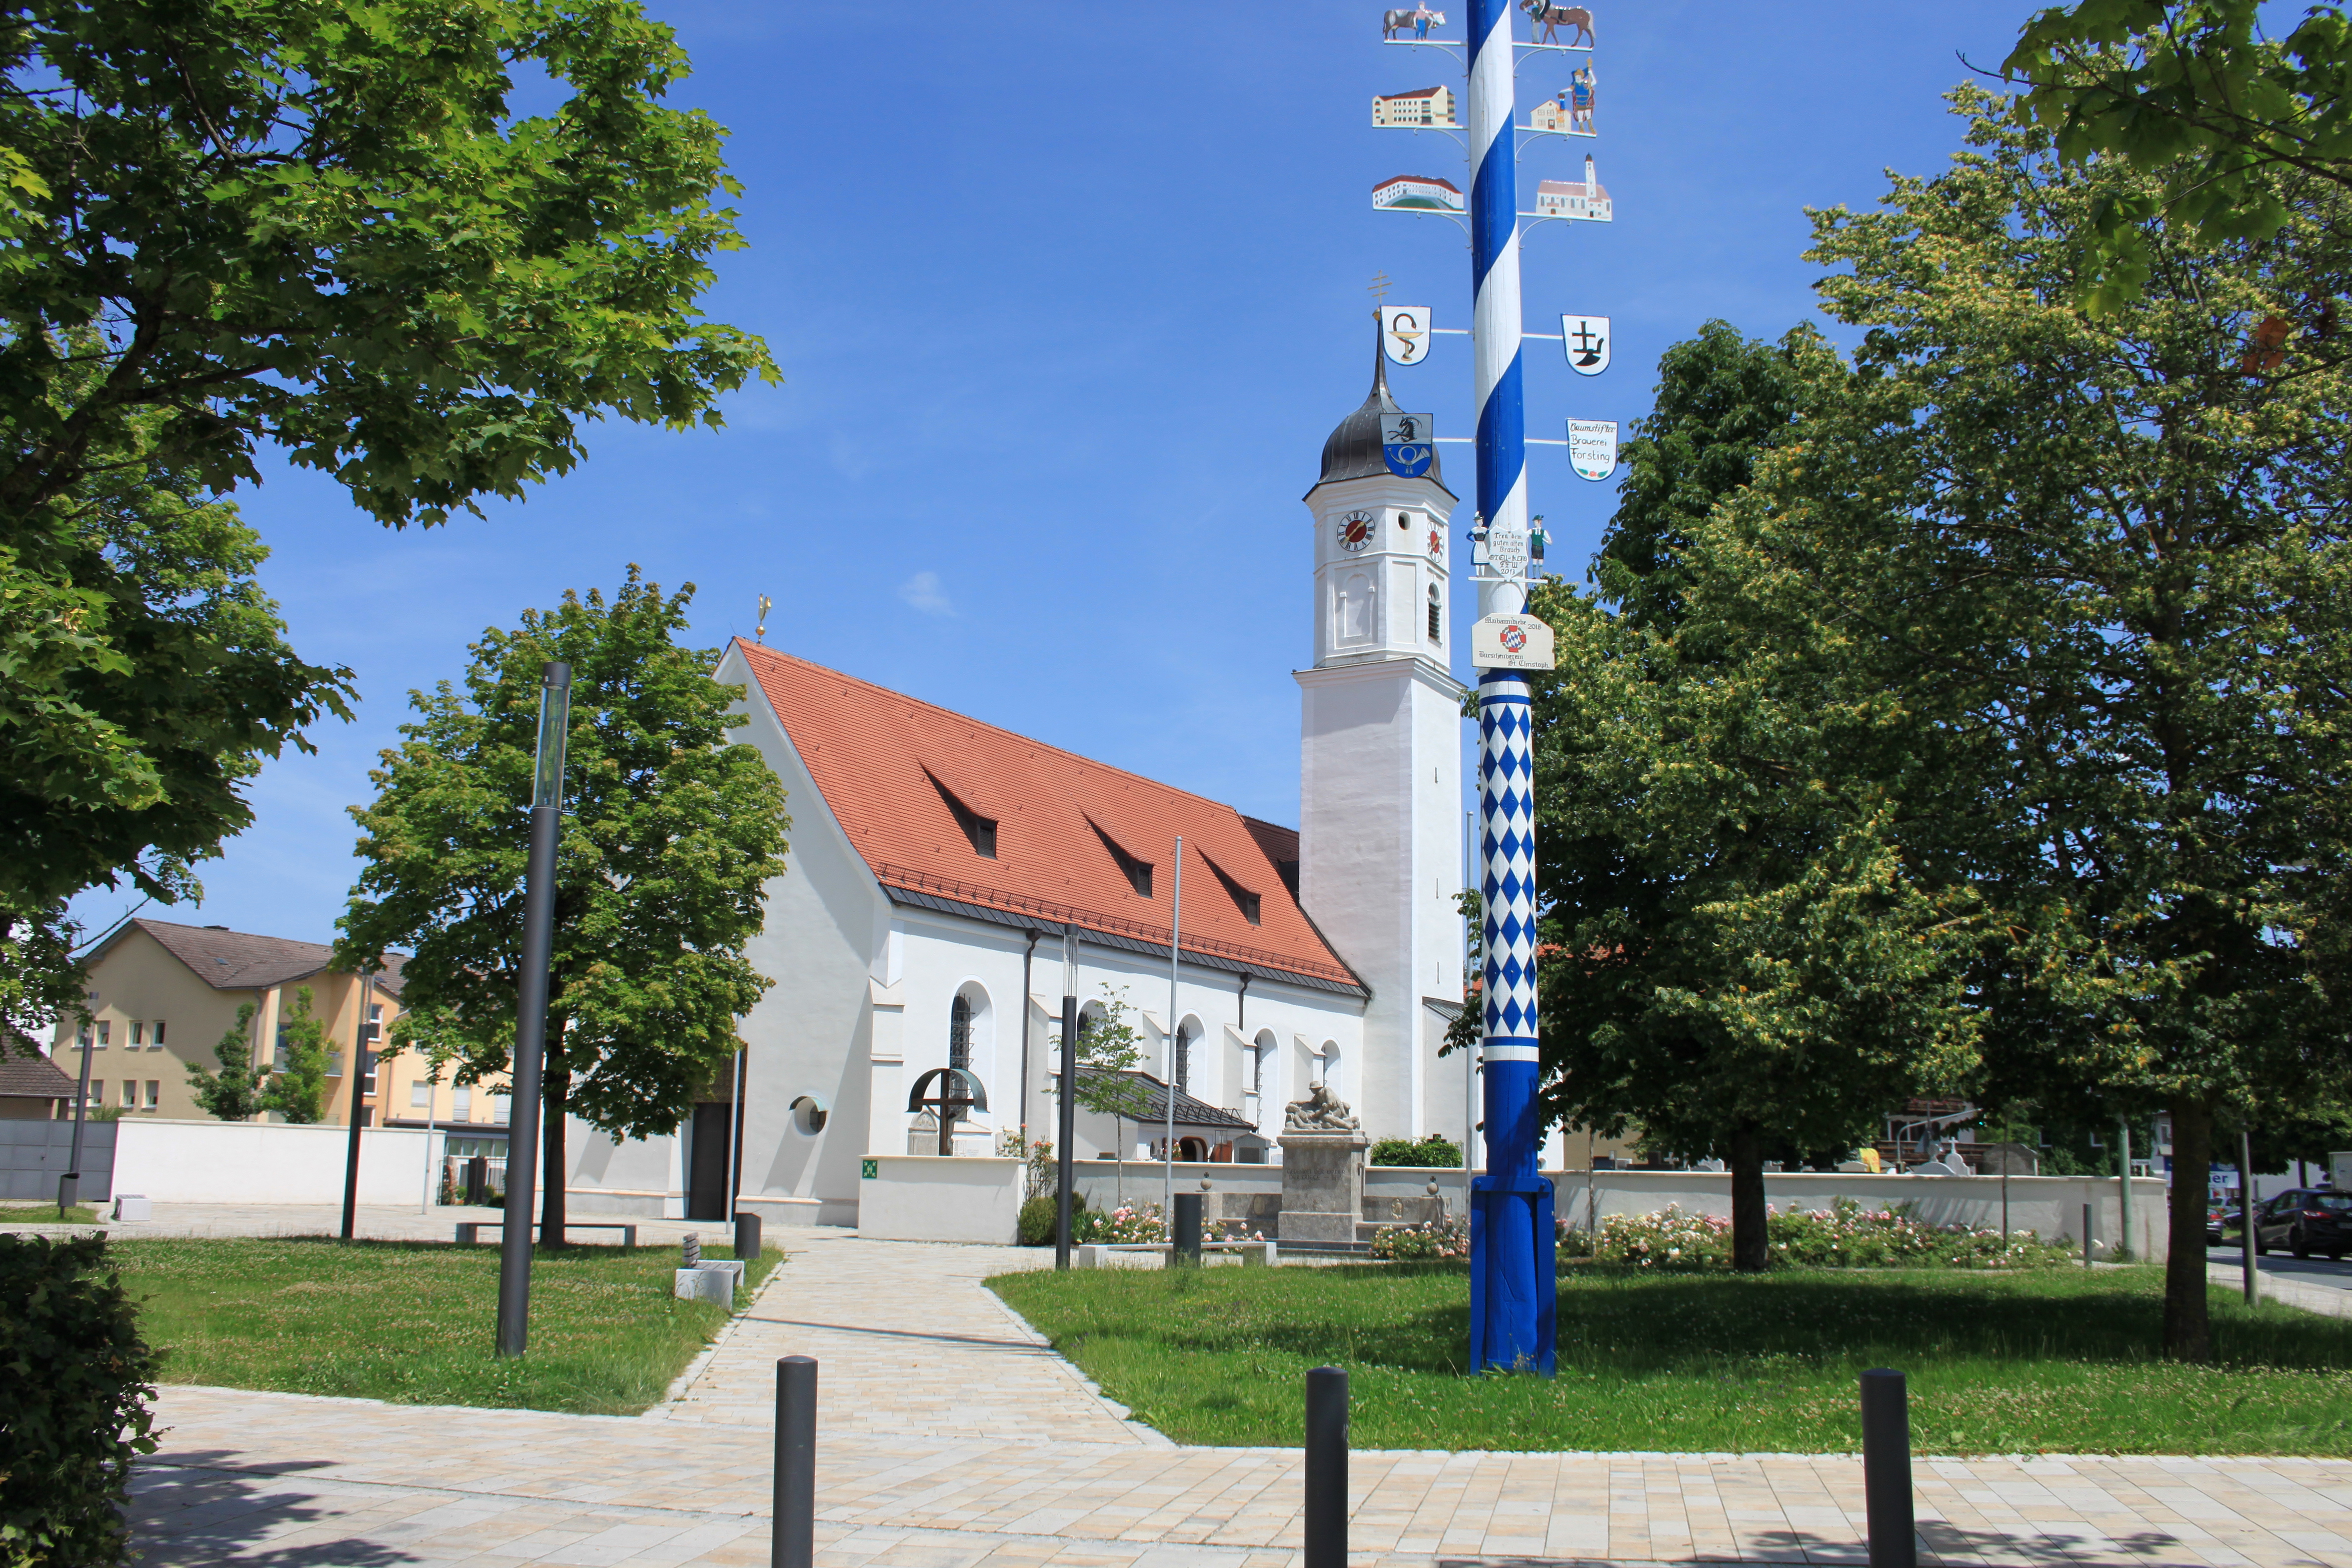 Steinhöring Kirche und Dorfplatz